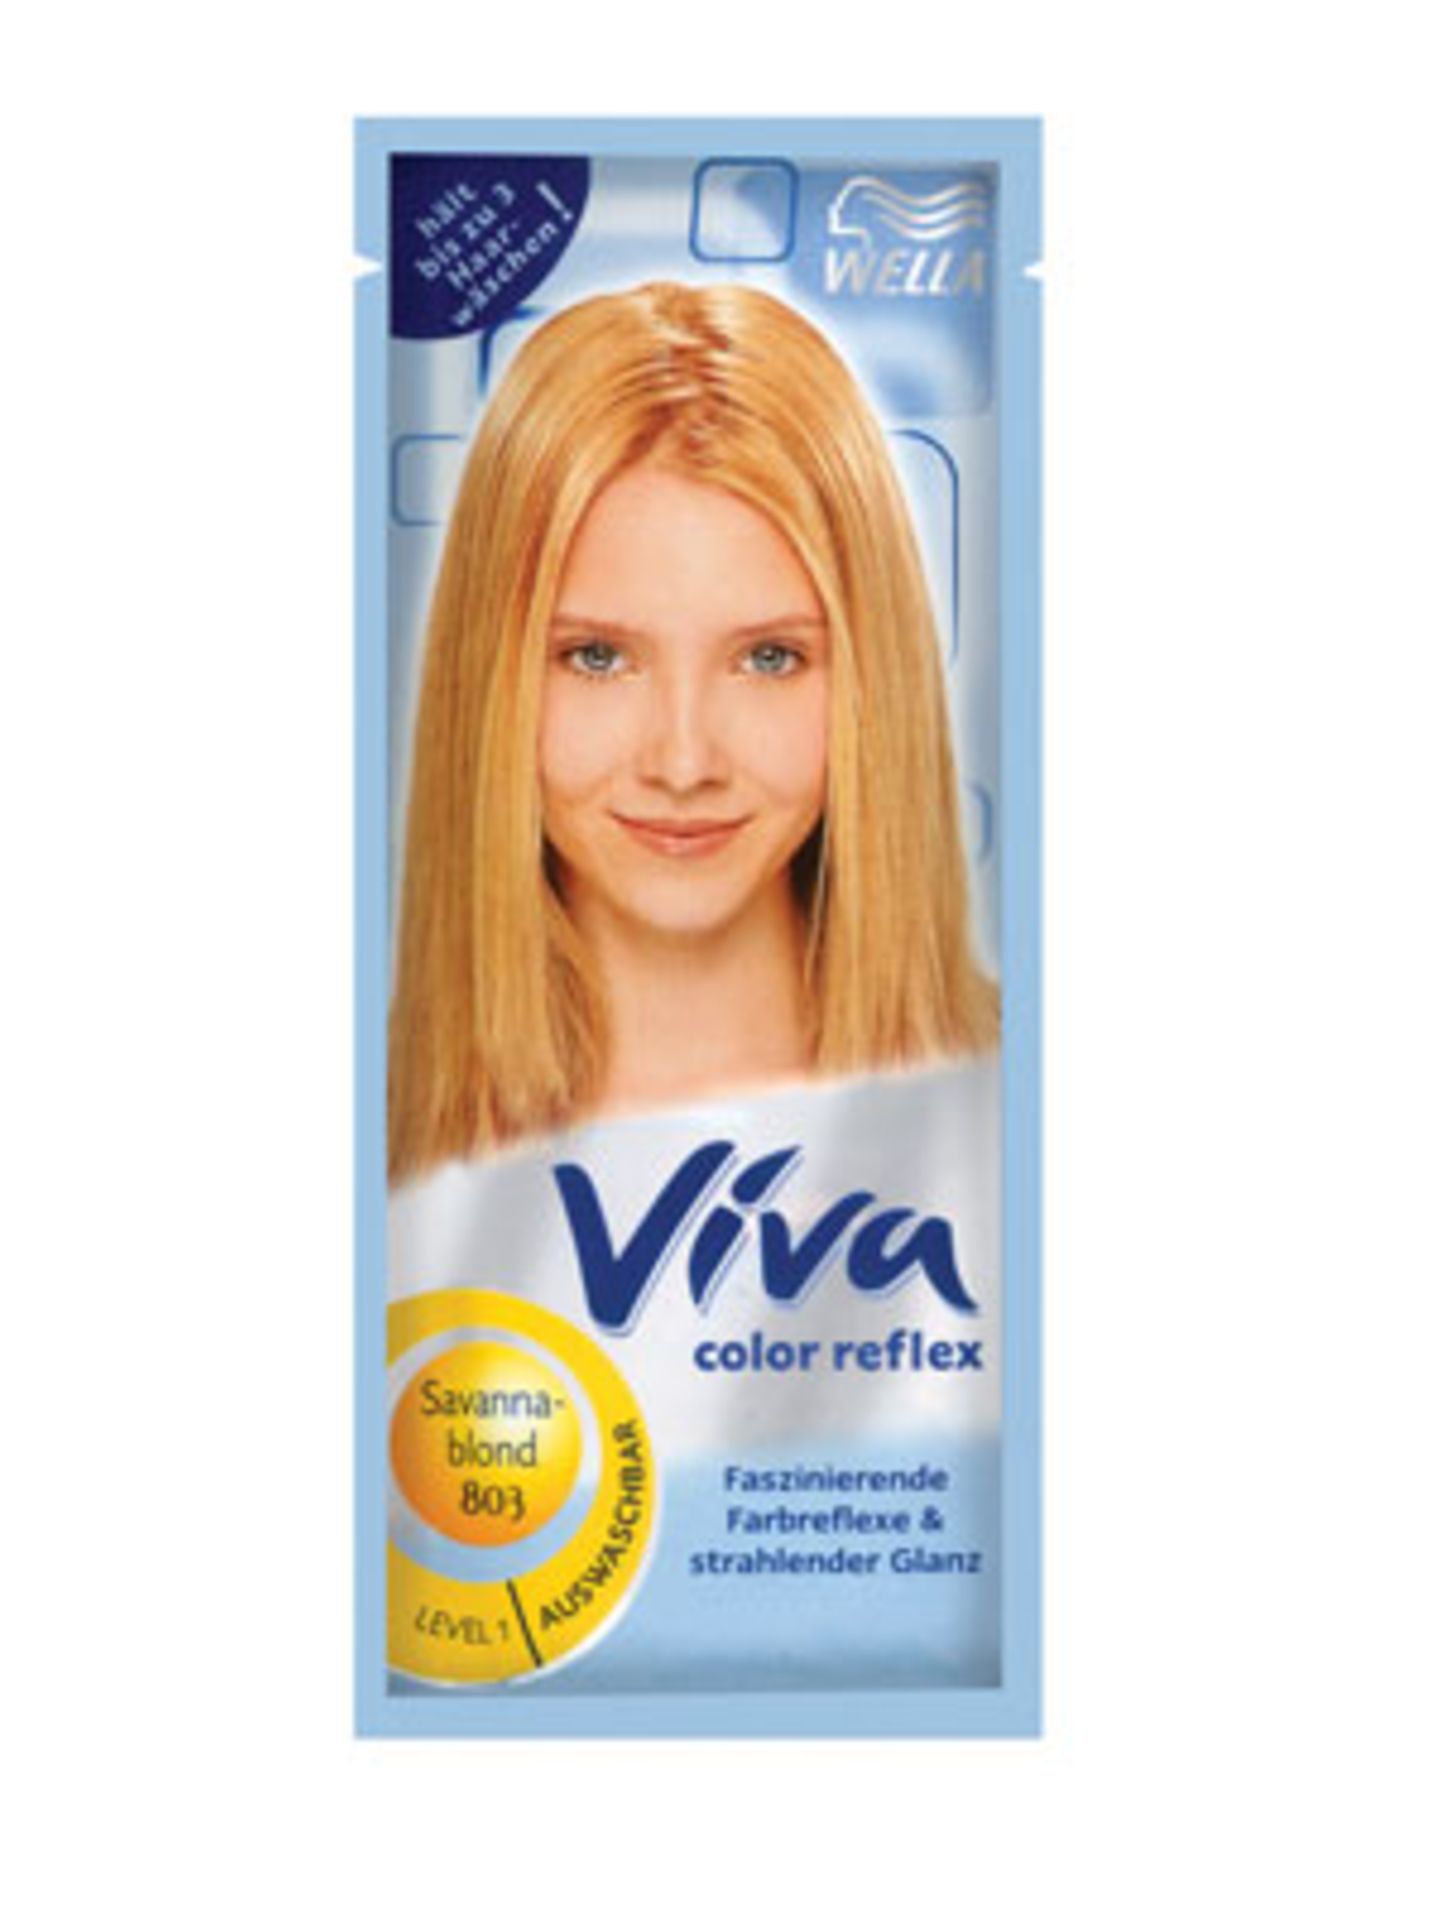 Neue Farbreflexe und neuer Glanz für coloriertes Haar. Wie ein Shampoo anzuwenden. Von Viva, im Sachet um 1,30 Euro.